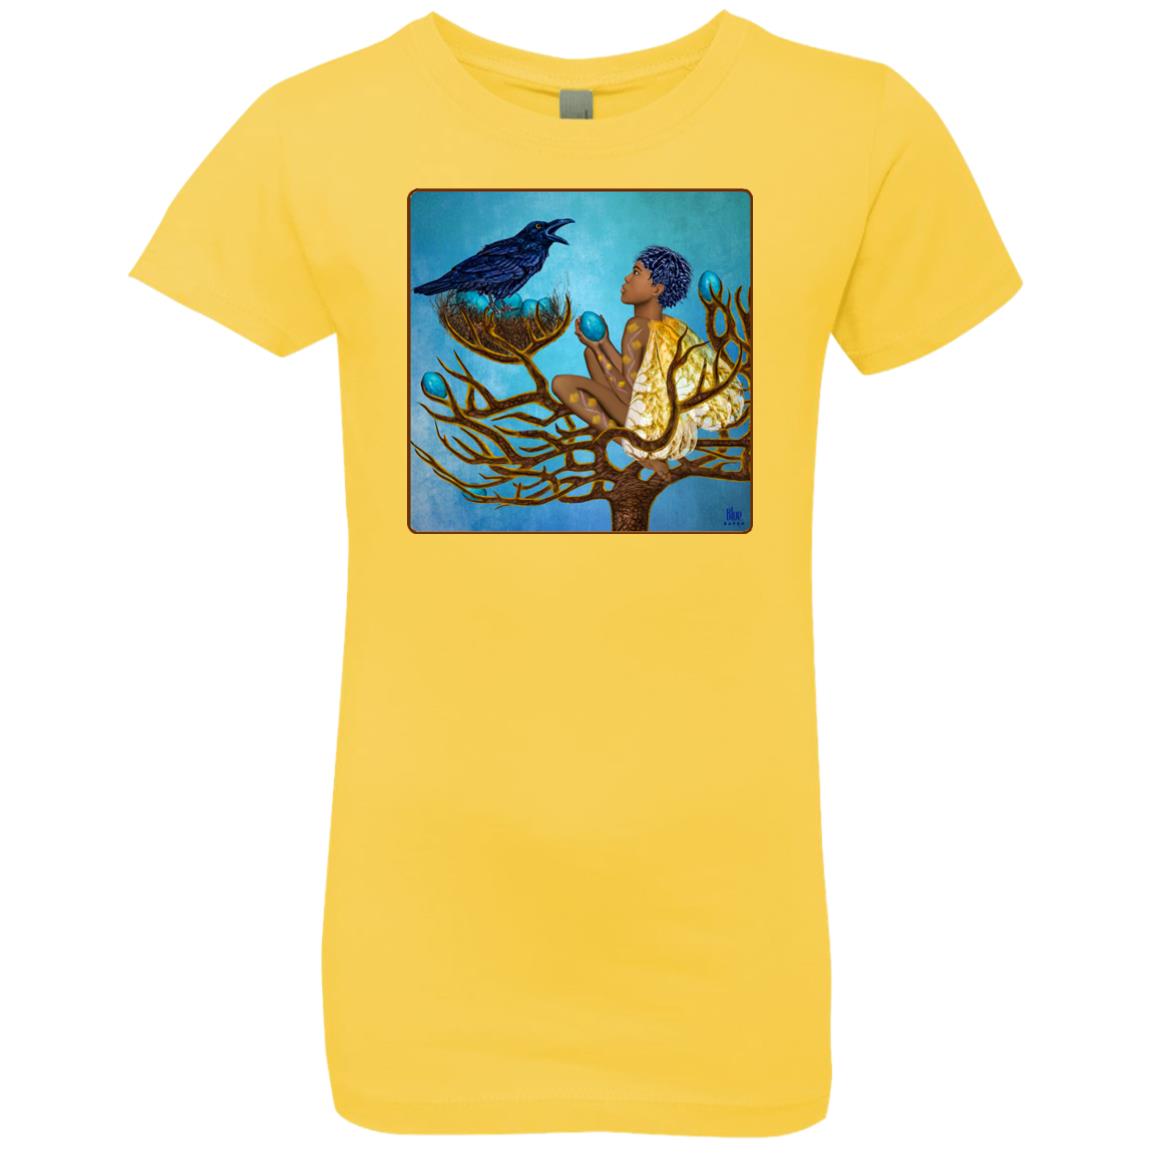 The blue raven's friend - Girl's Premium Cotton T-Shirt